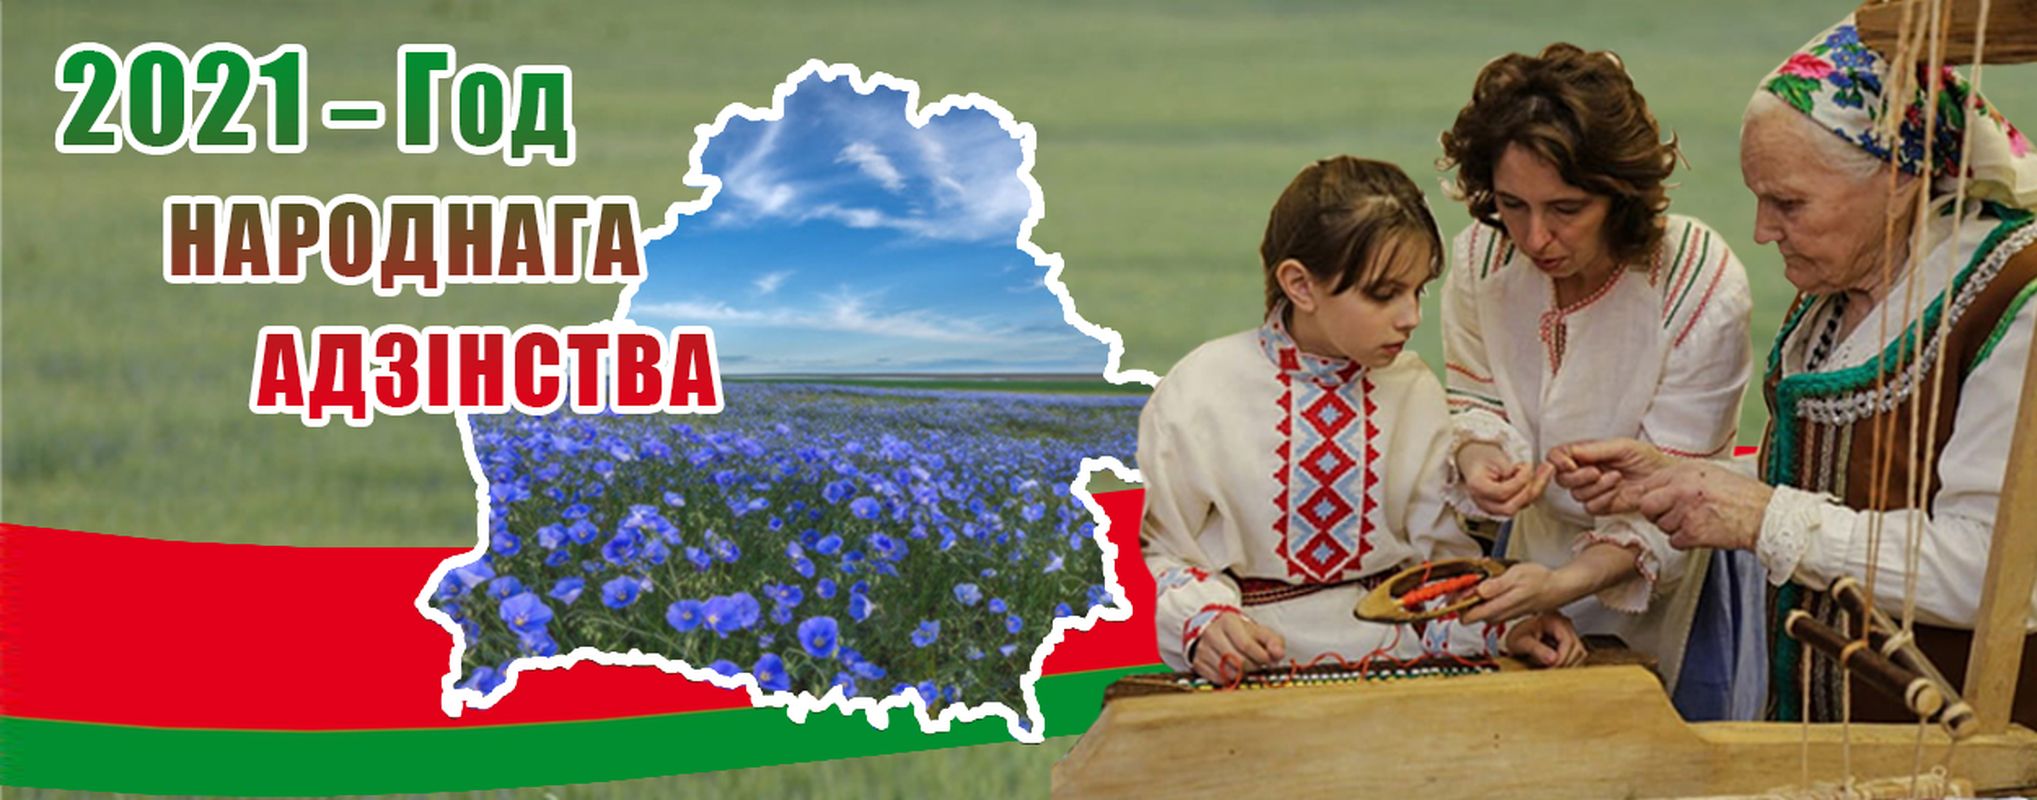 День народного единства Беларусь